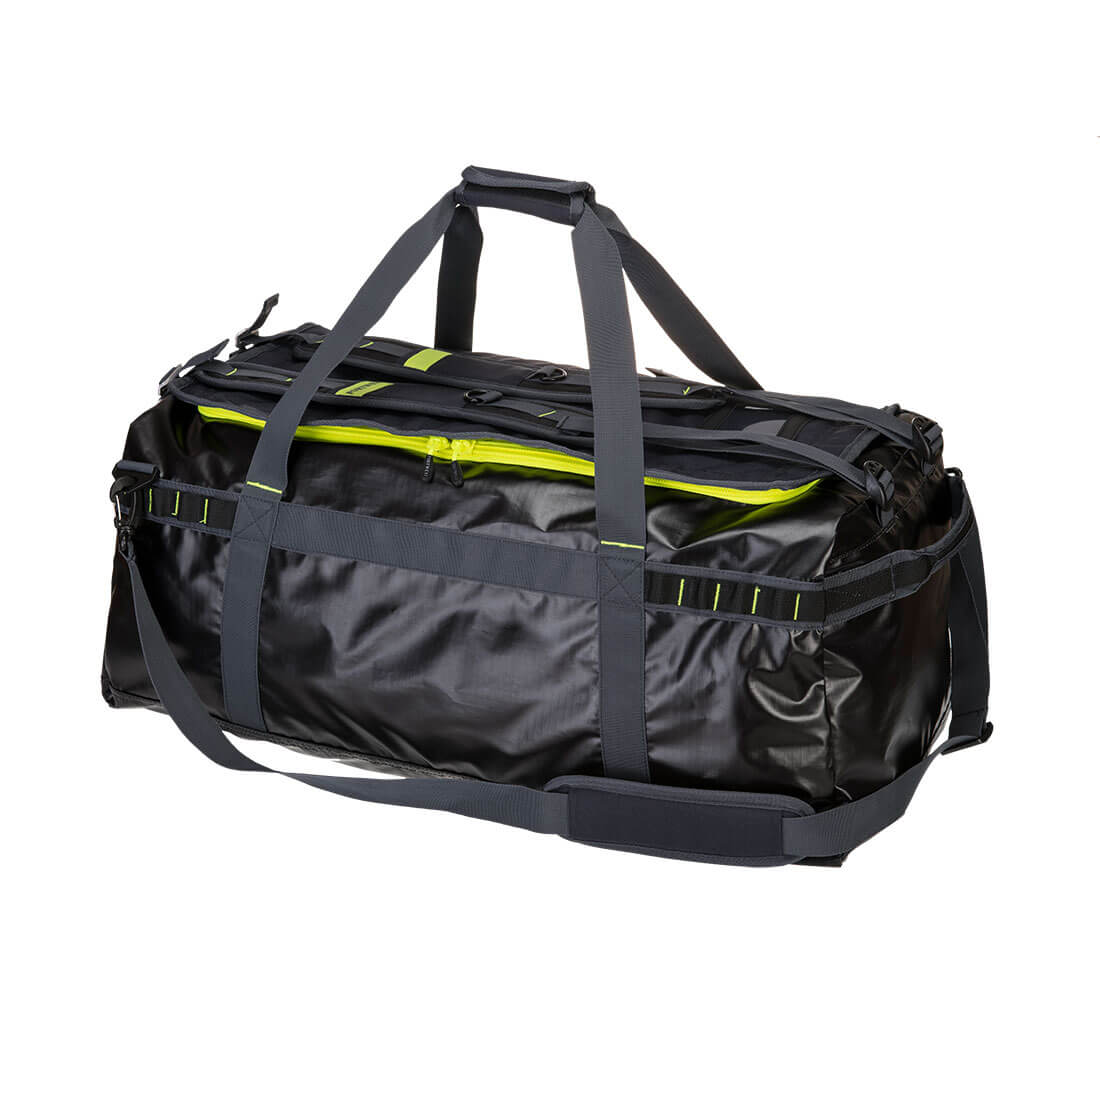 PW3 70L Water-Resistant Duffle Bag - Black